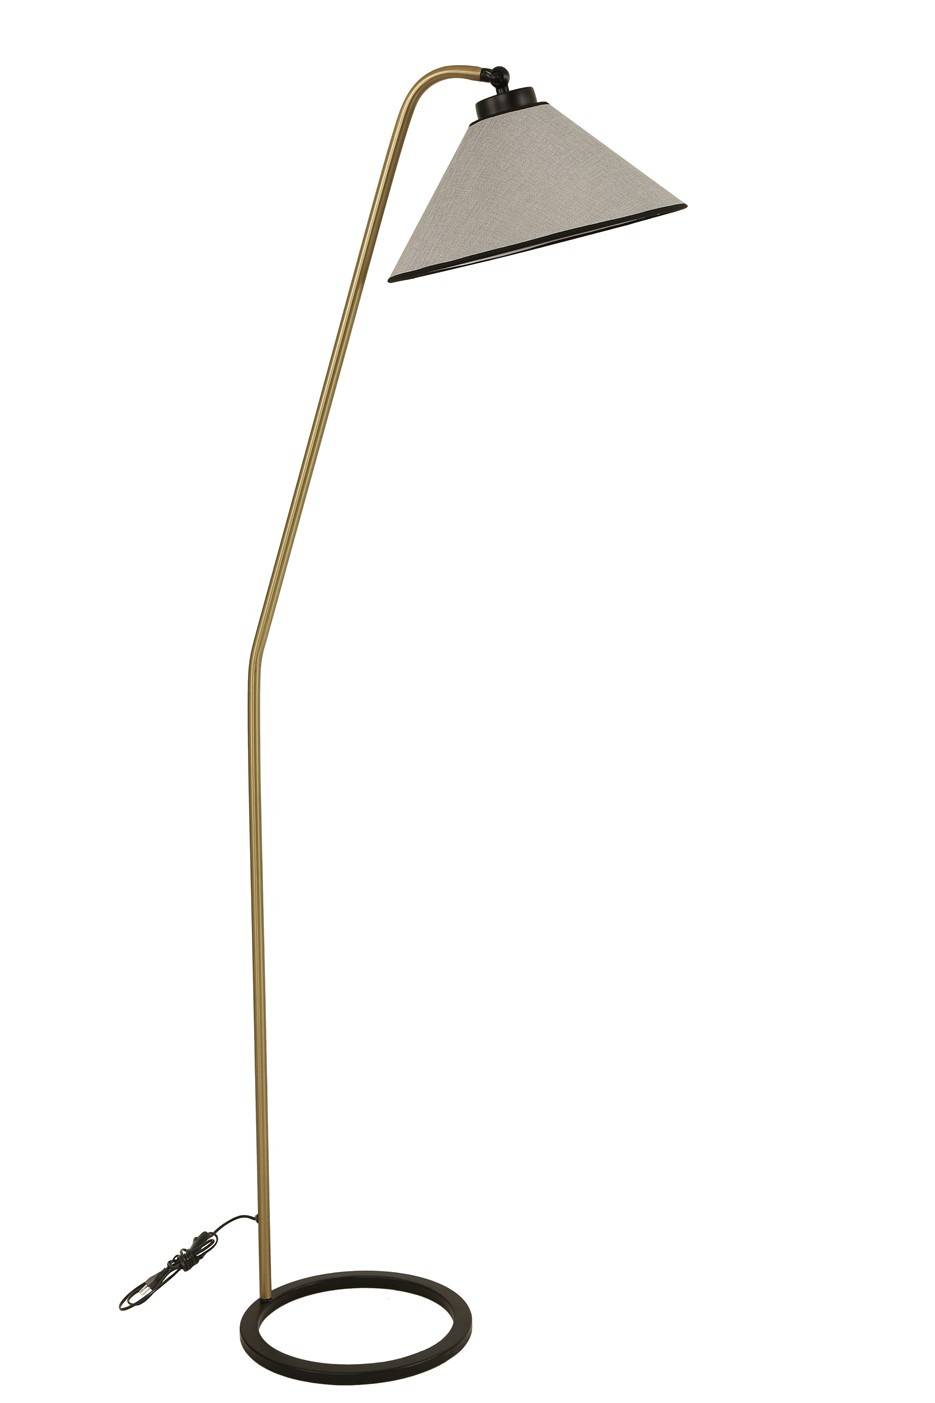 Kojex afgeknotte kegelvormige vloerlamp H155cm Grijs en goudkleurig metaal